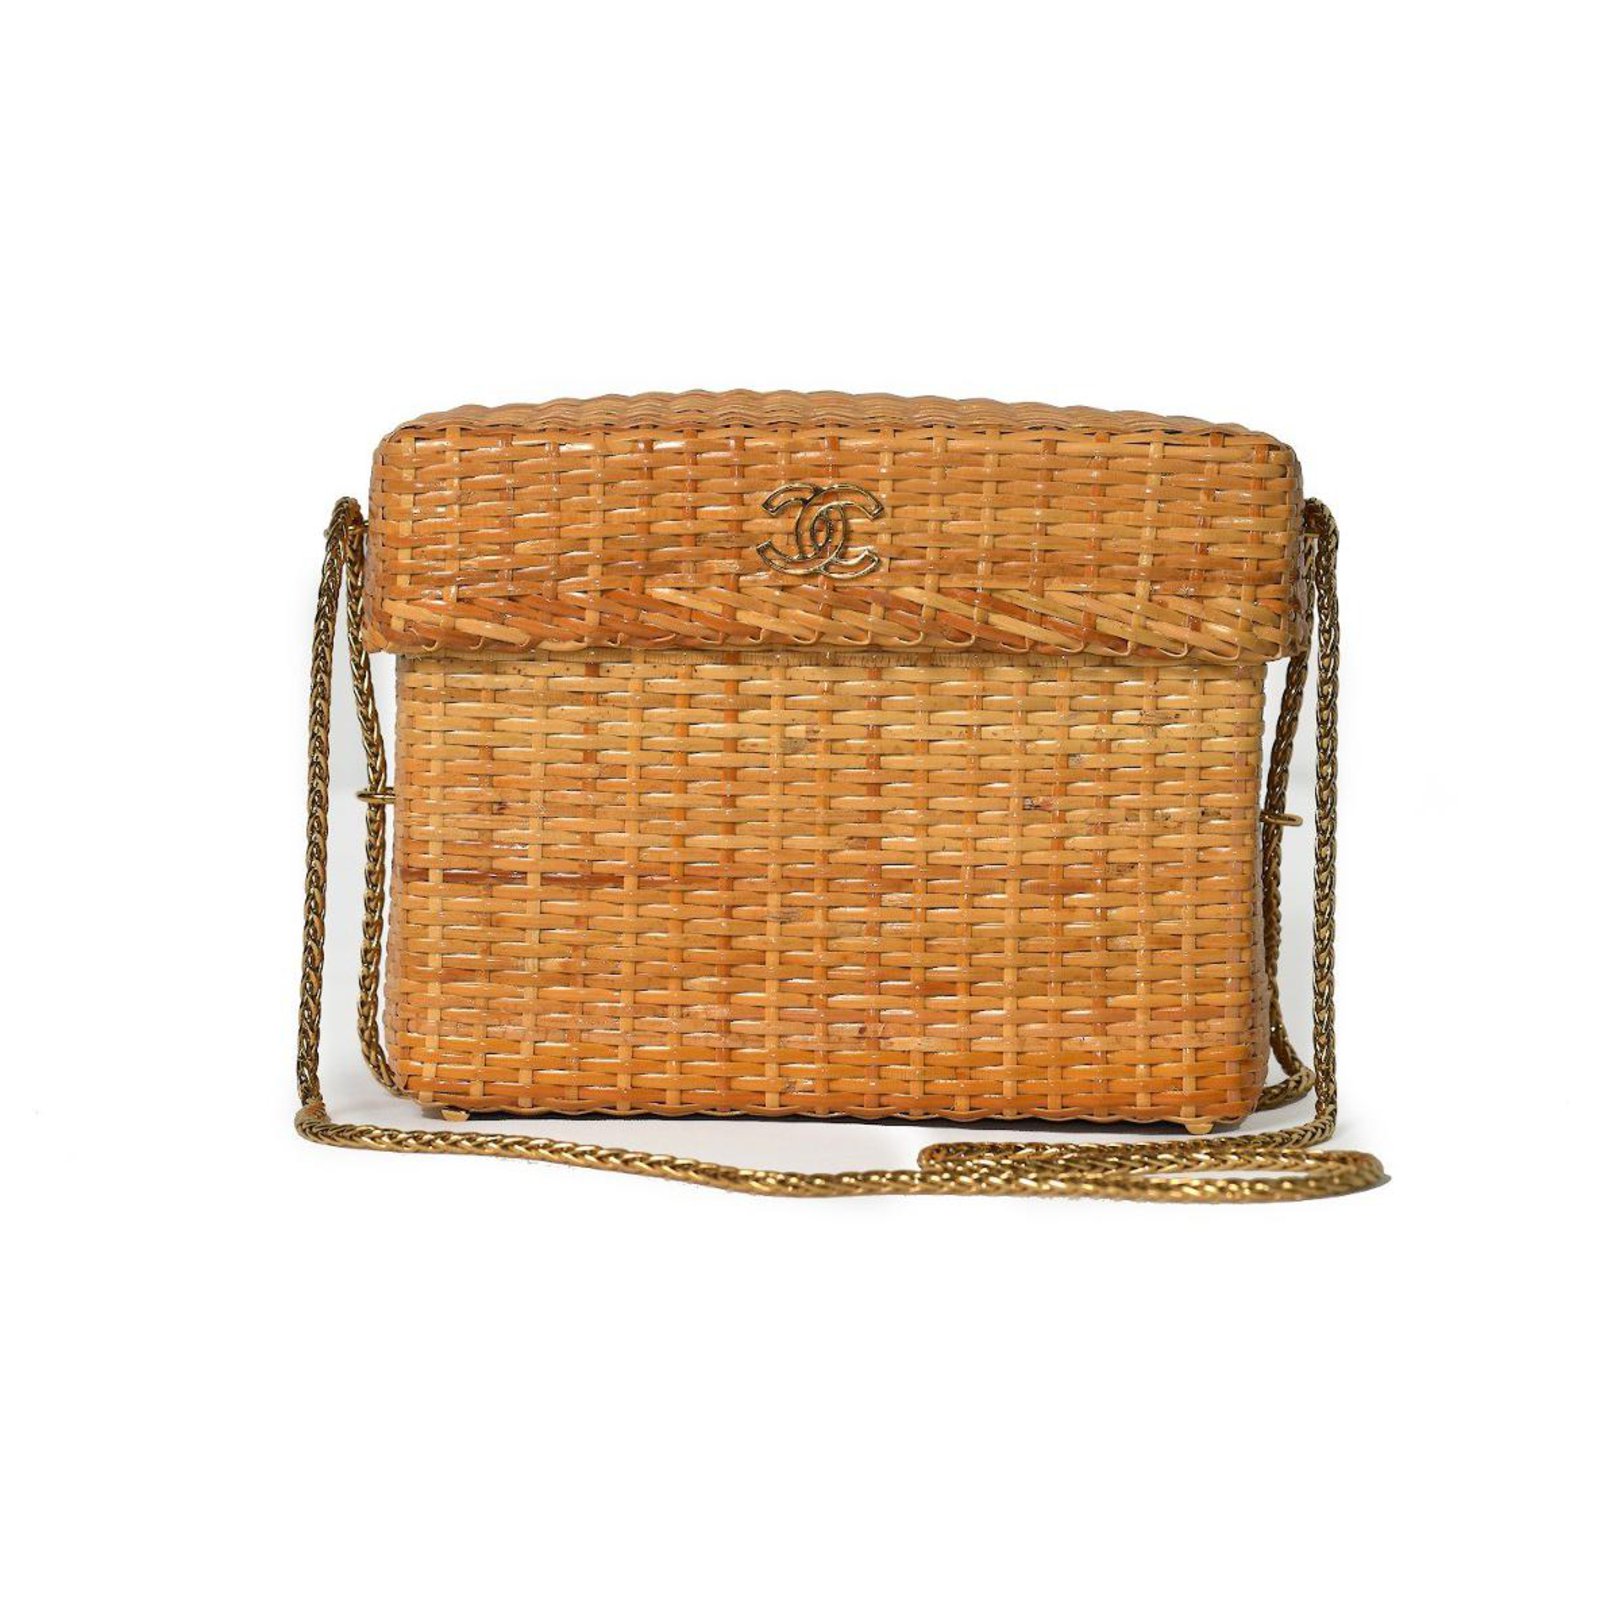 Chanel Wicker Basket Bag - Handbags - CHA31511, The RealReal